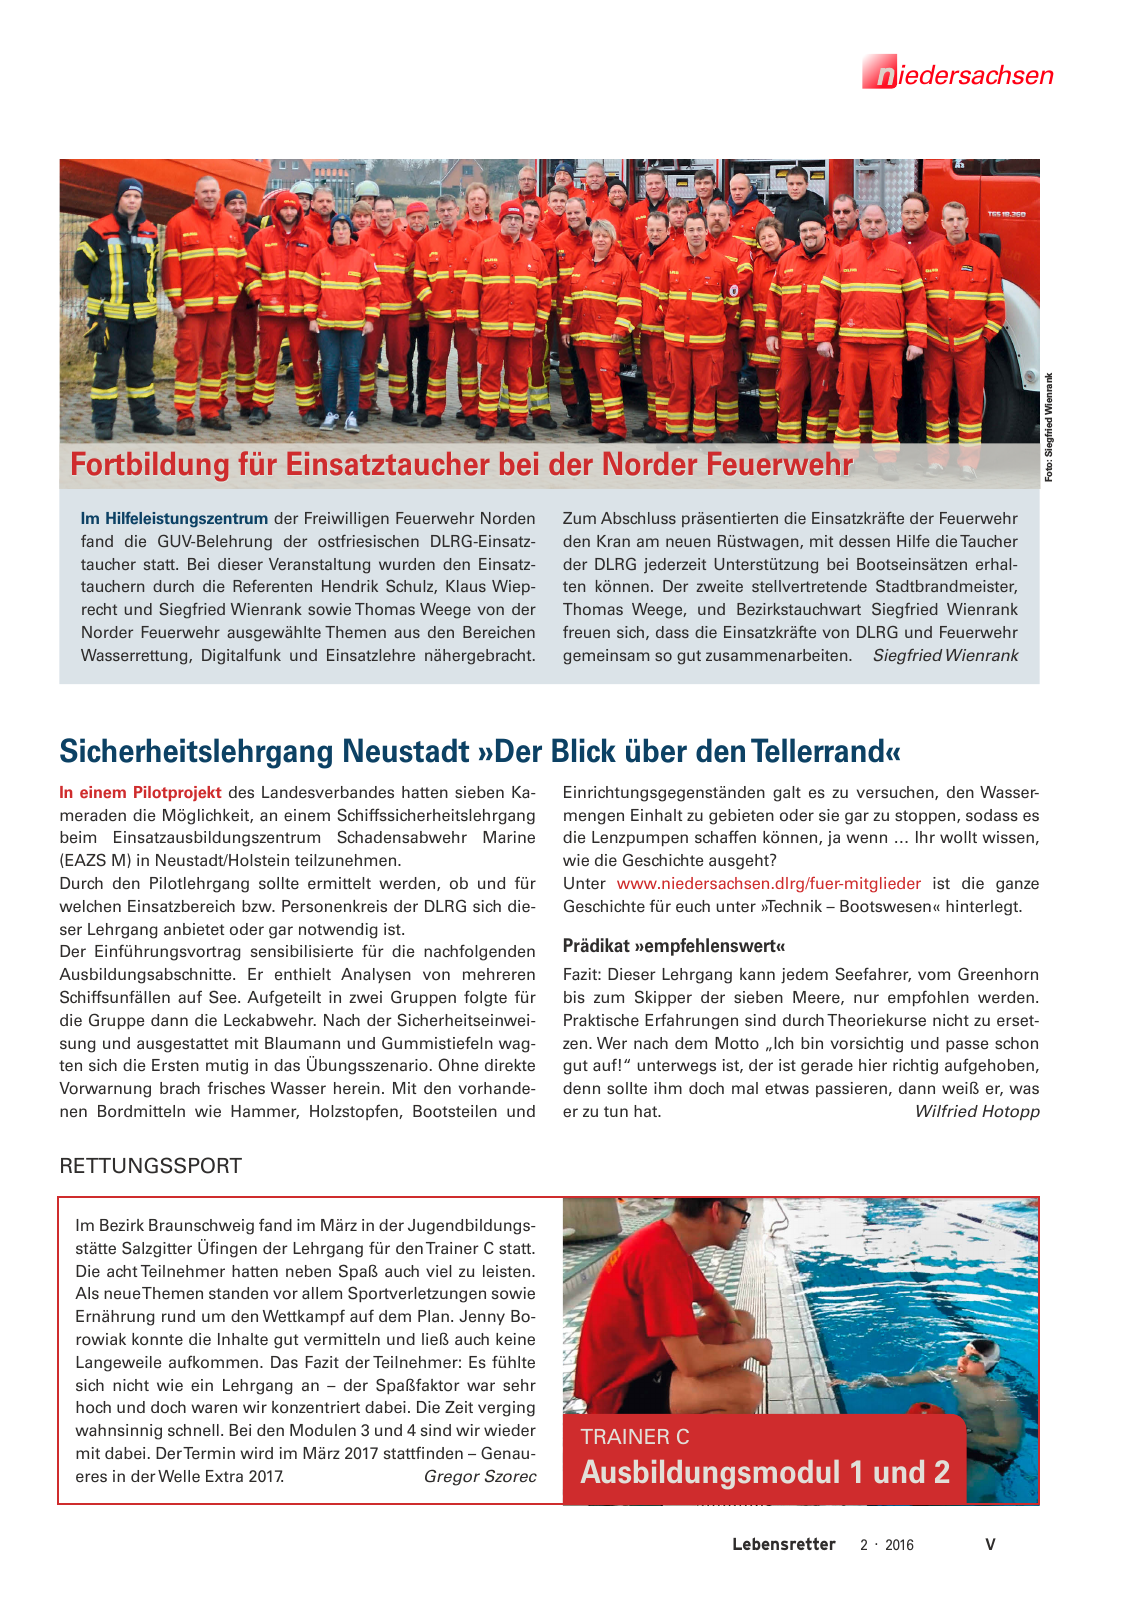 Vorschau Lebensretter 2/2016 - Regionalausgabe Niedersachsen Seite 7